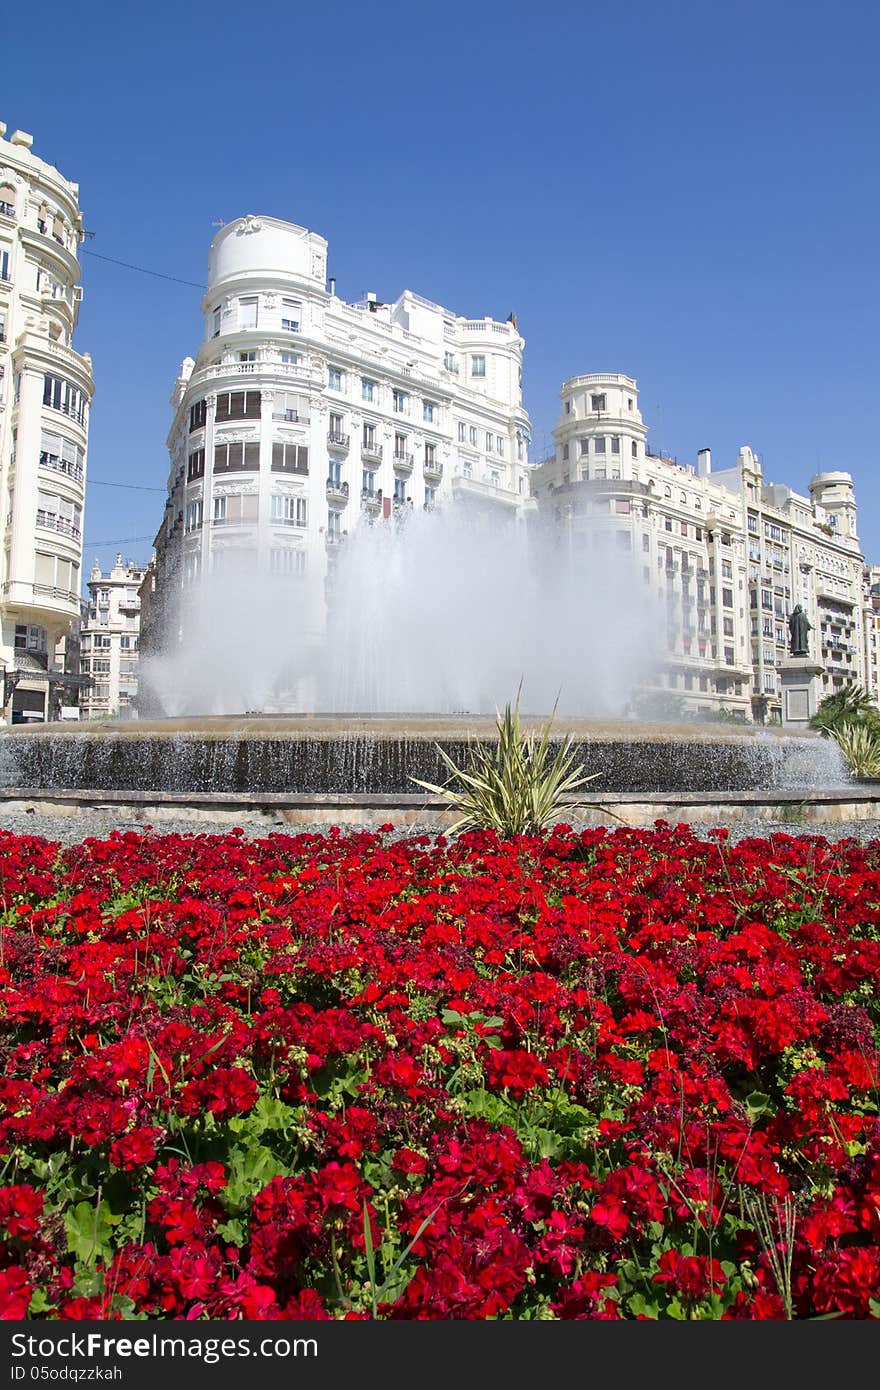 The Valencia, Spain Fountain in the main square.